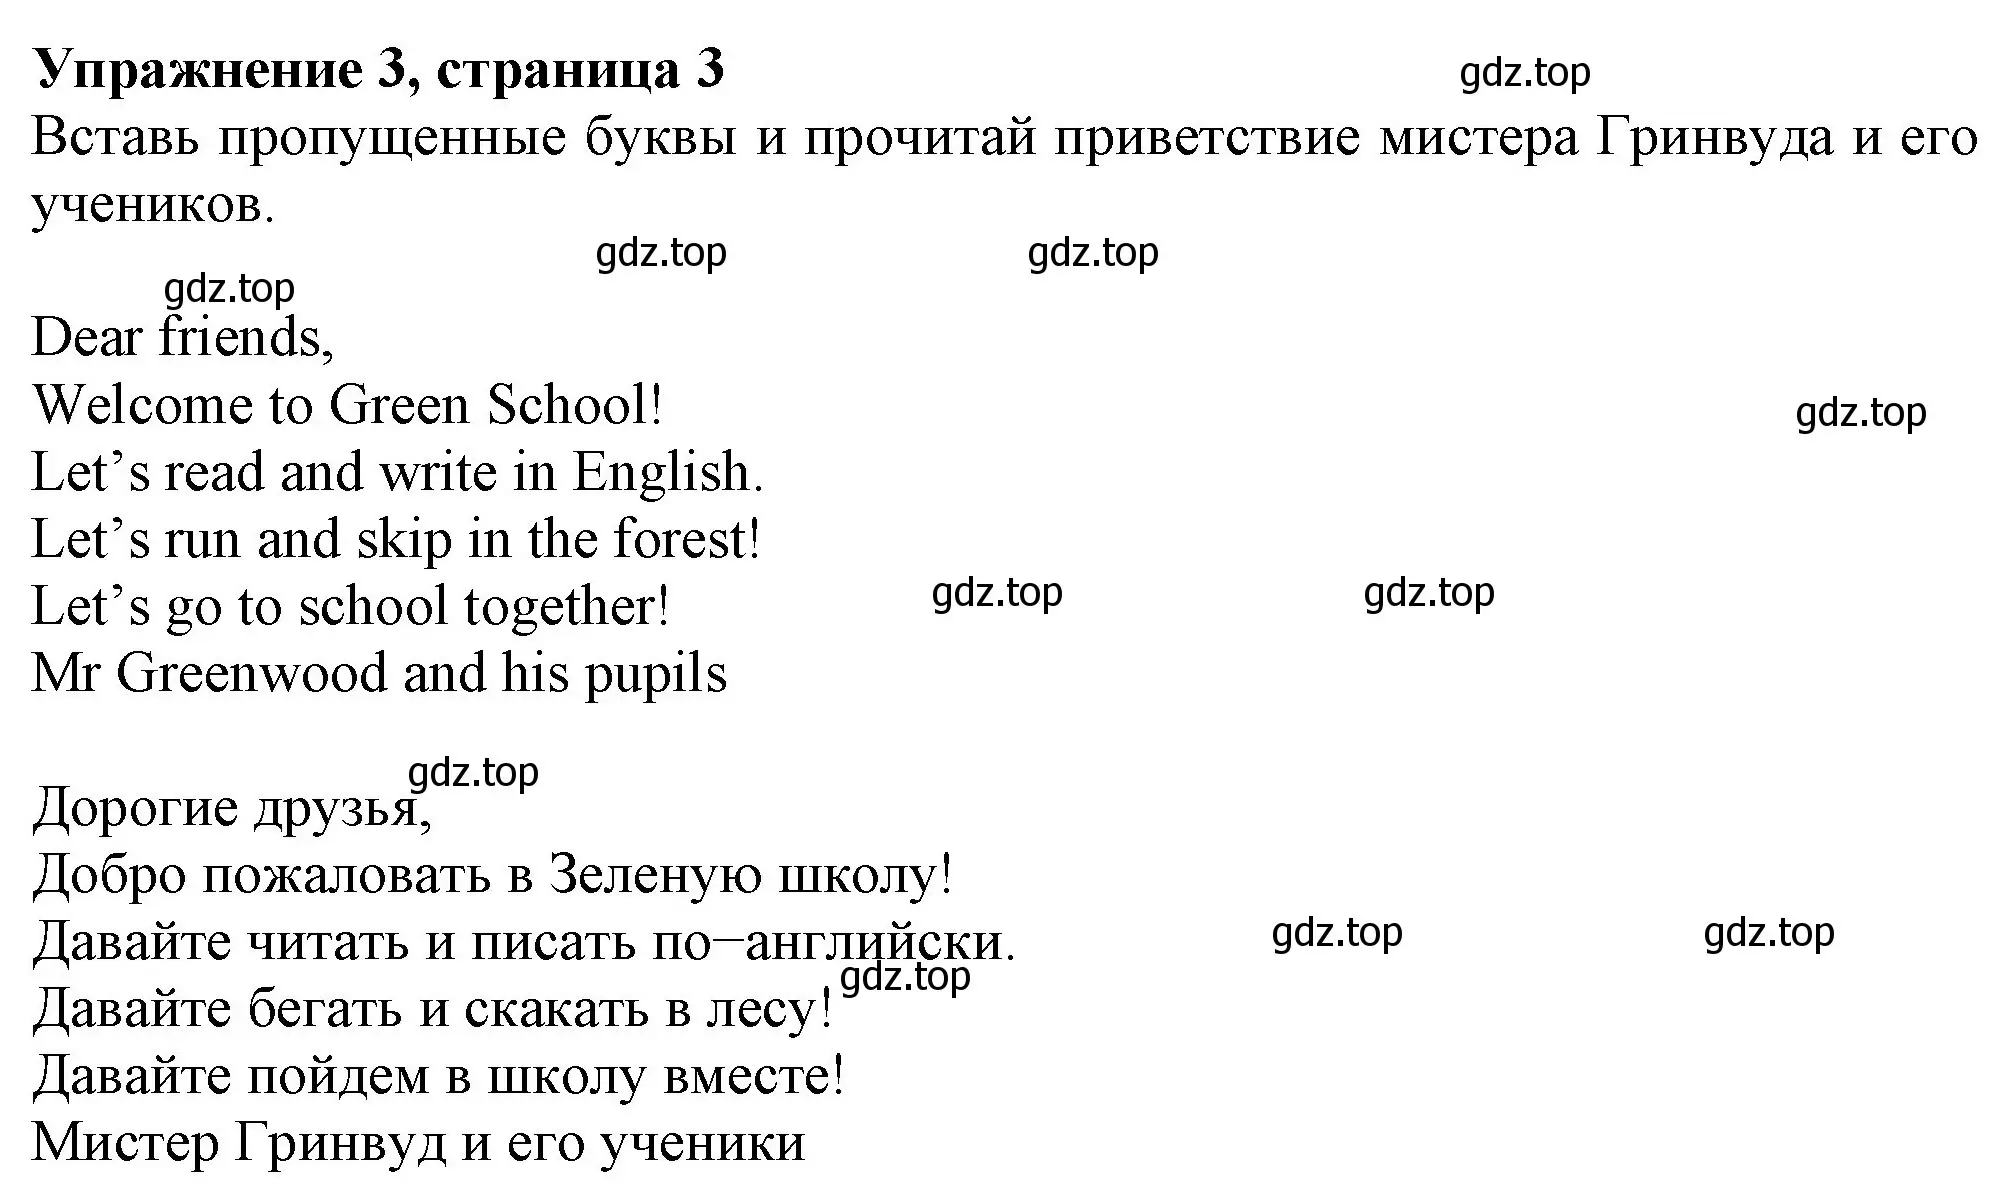 Решение номер 3 (страница 3) гдз по английскому языку 3 класс Биболетова, Денисенко, рабочая тетрадь